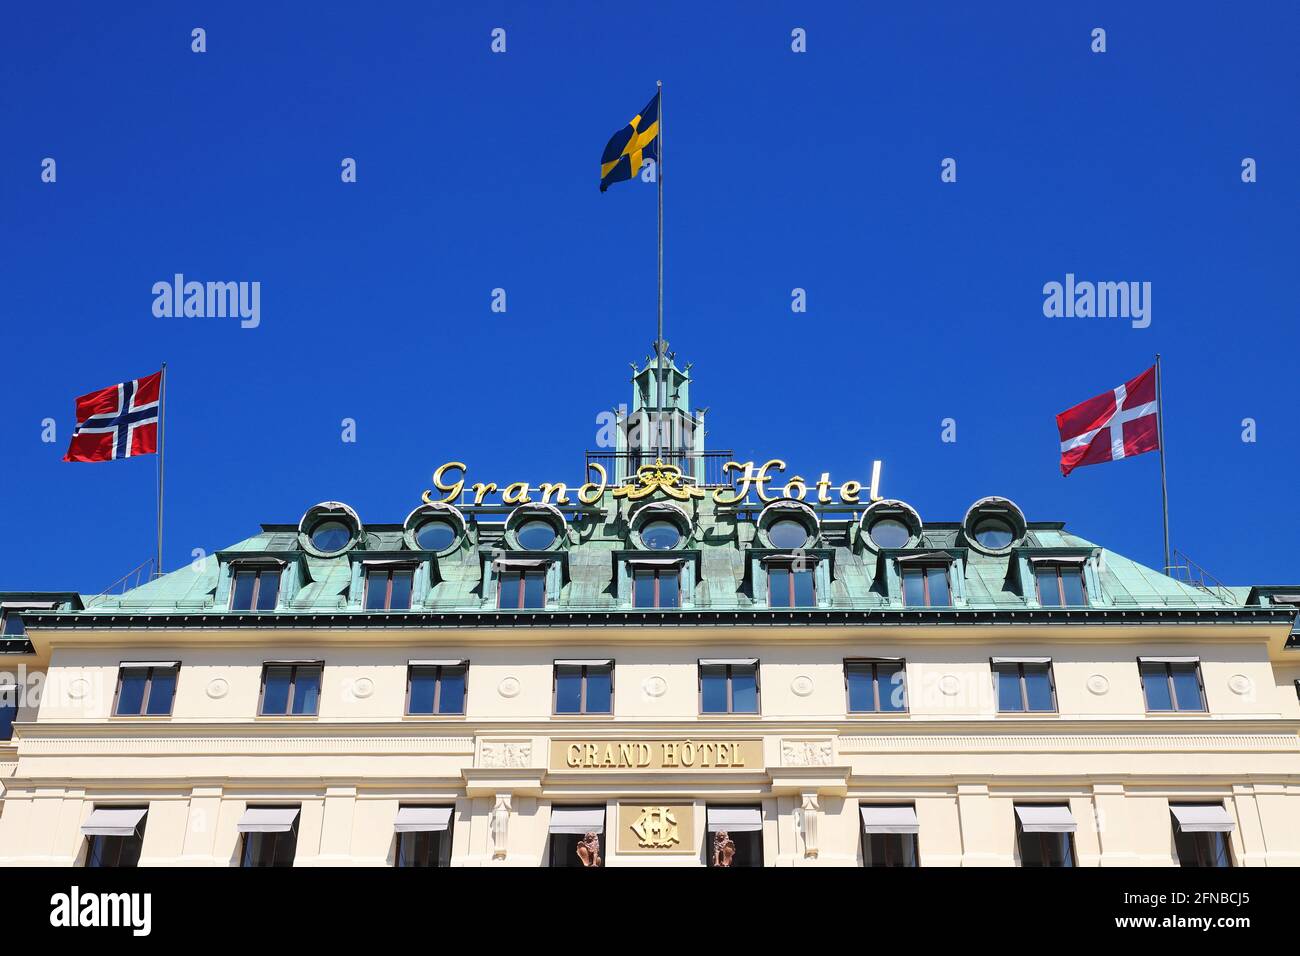 Stoccolma, Svezia - 12 maggio 2021: Vista ad angolo basso della facciata dell'hotel Stockholm Grand con bandiere di Norvegia, Svezia e Danimarca. Foto Stock